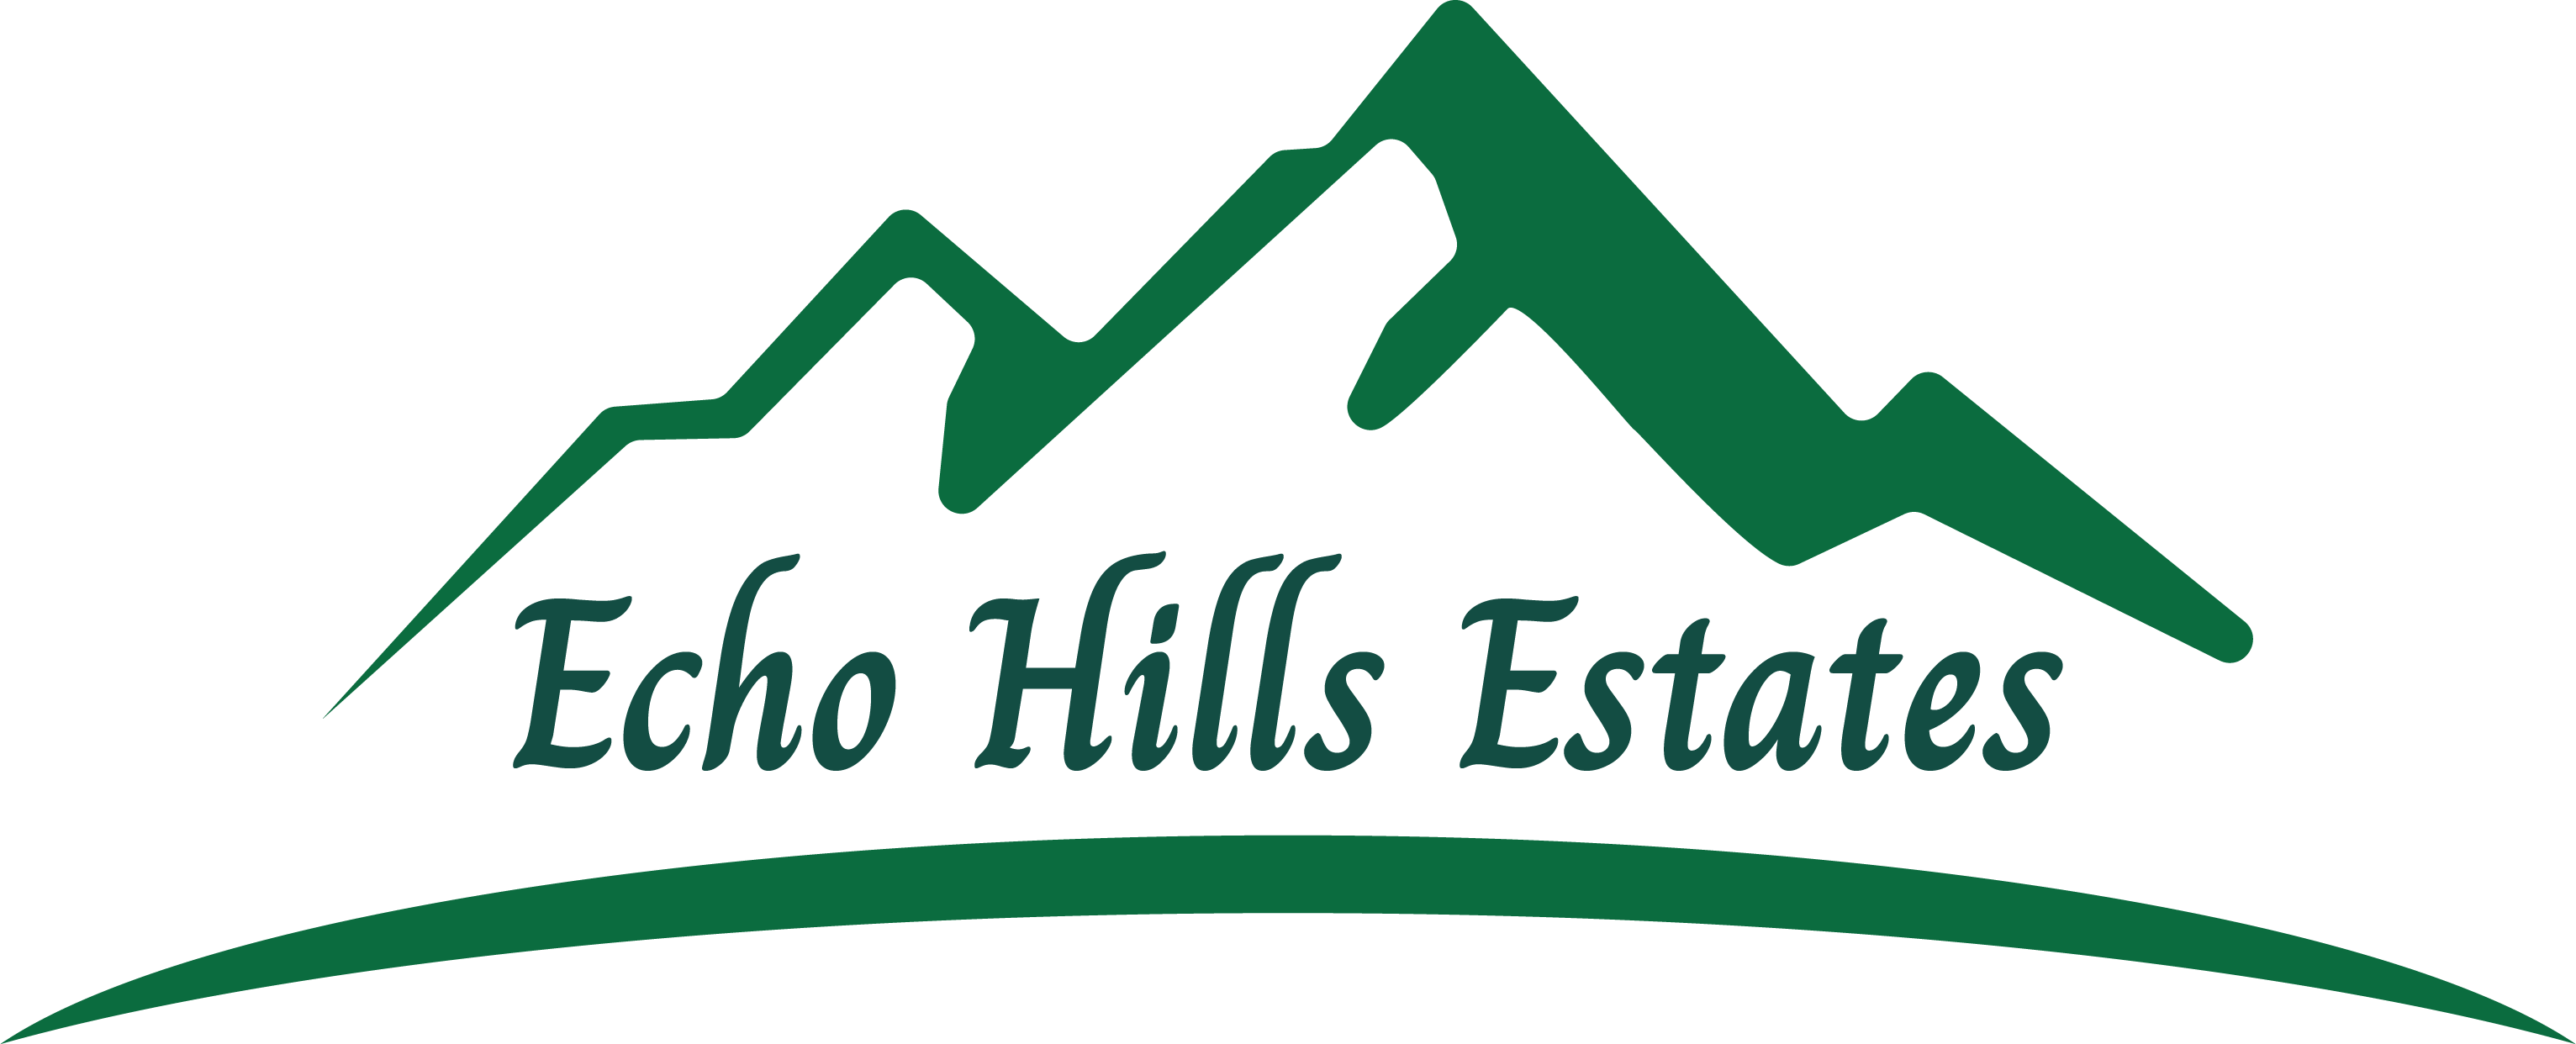 Echo Hills Estates